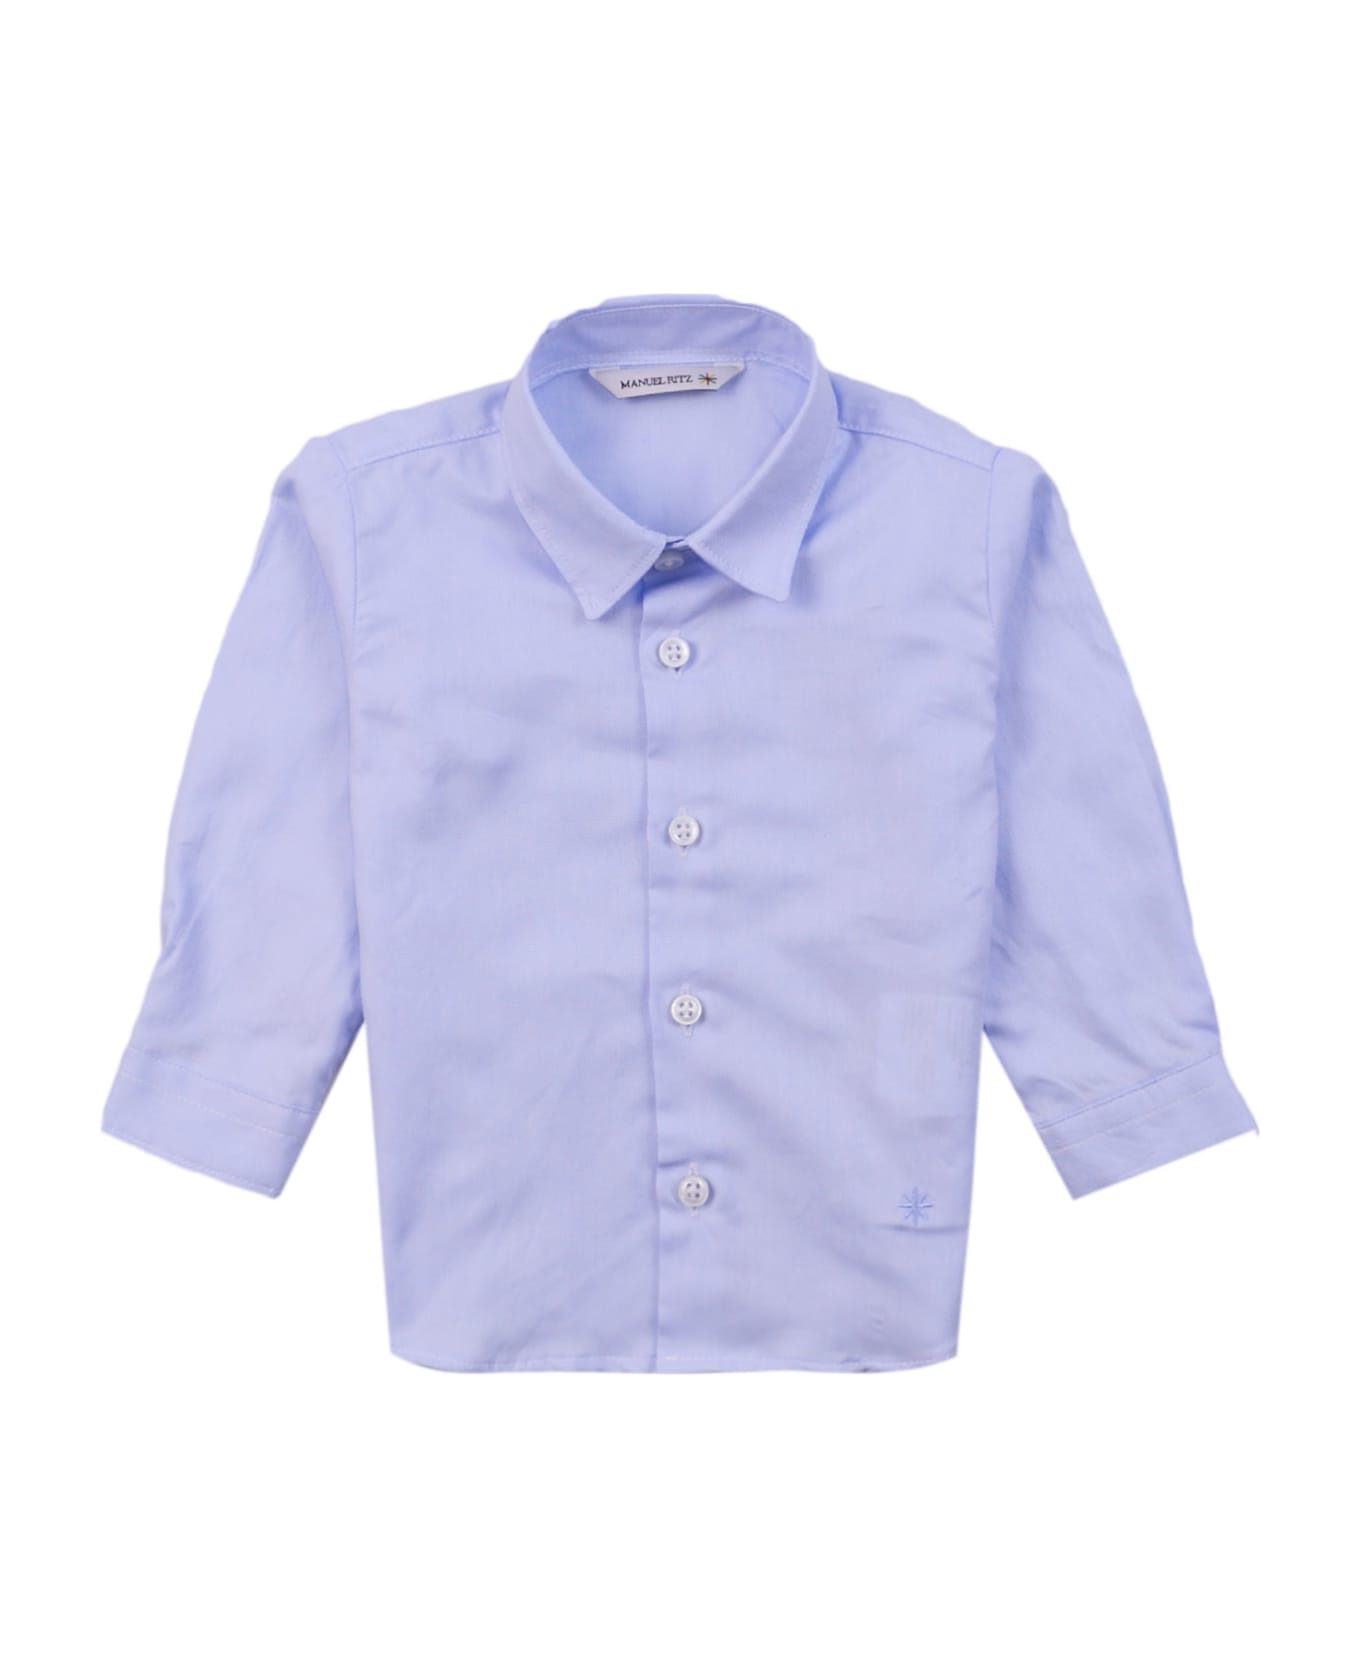 Manuel Ritz Cotton Shirt - Light blue